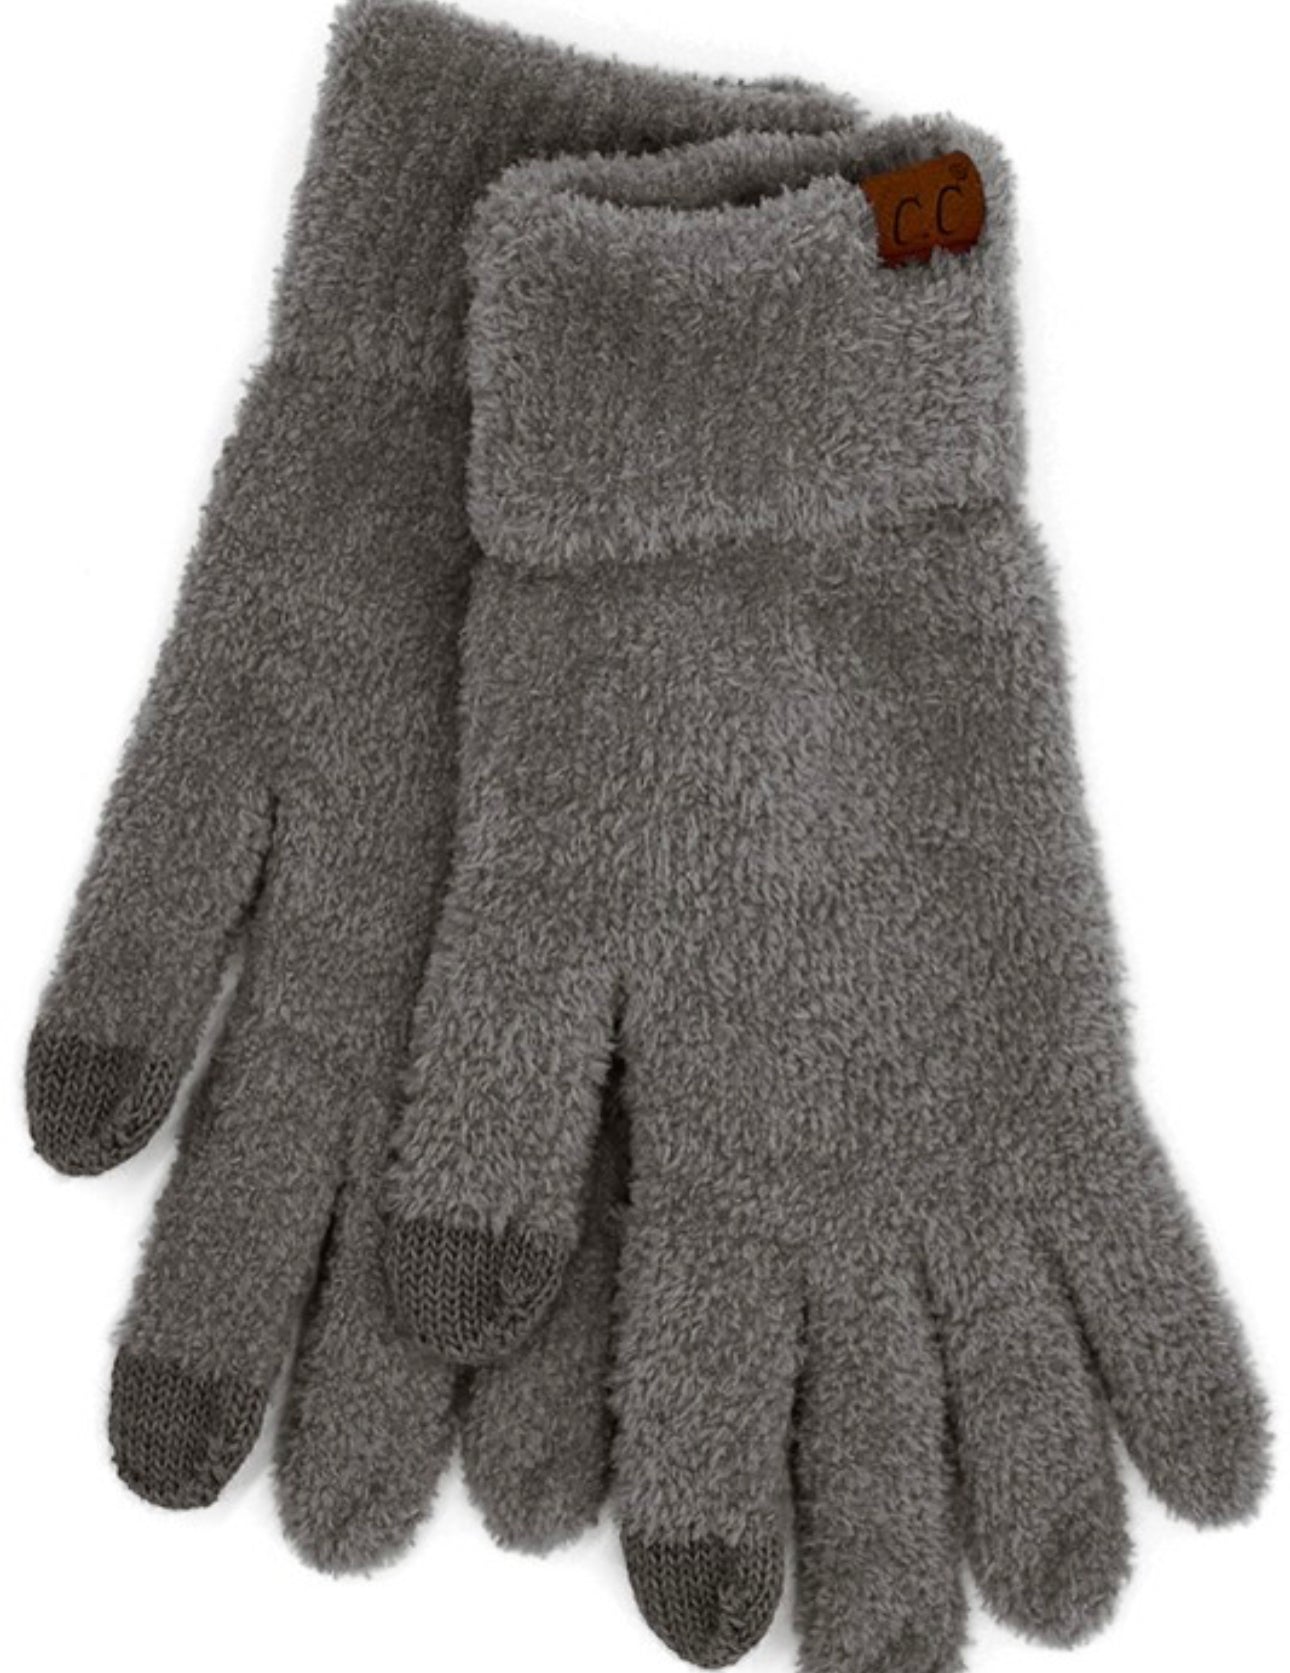 CC gloves